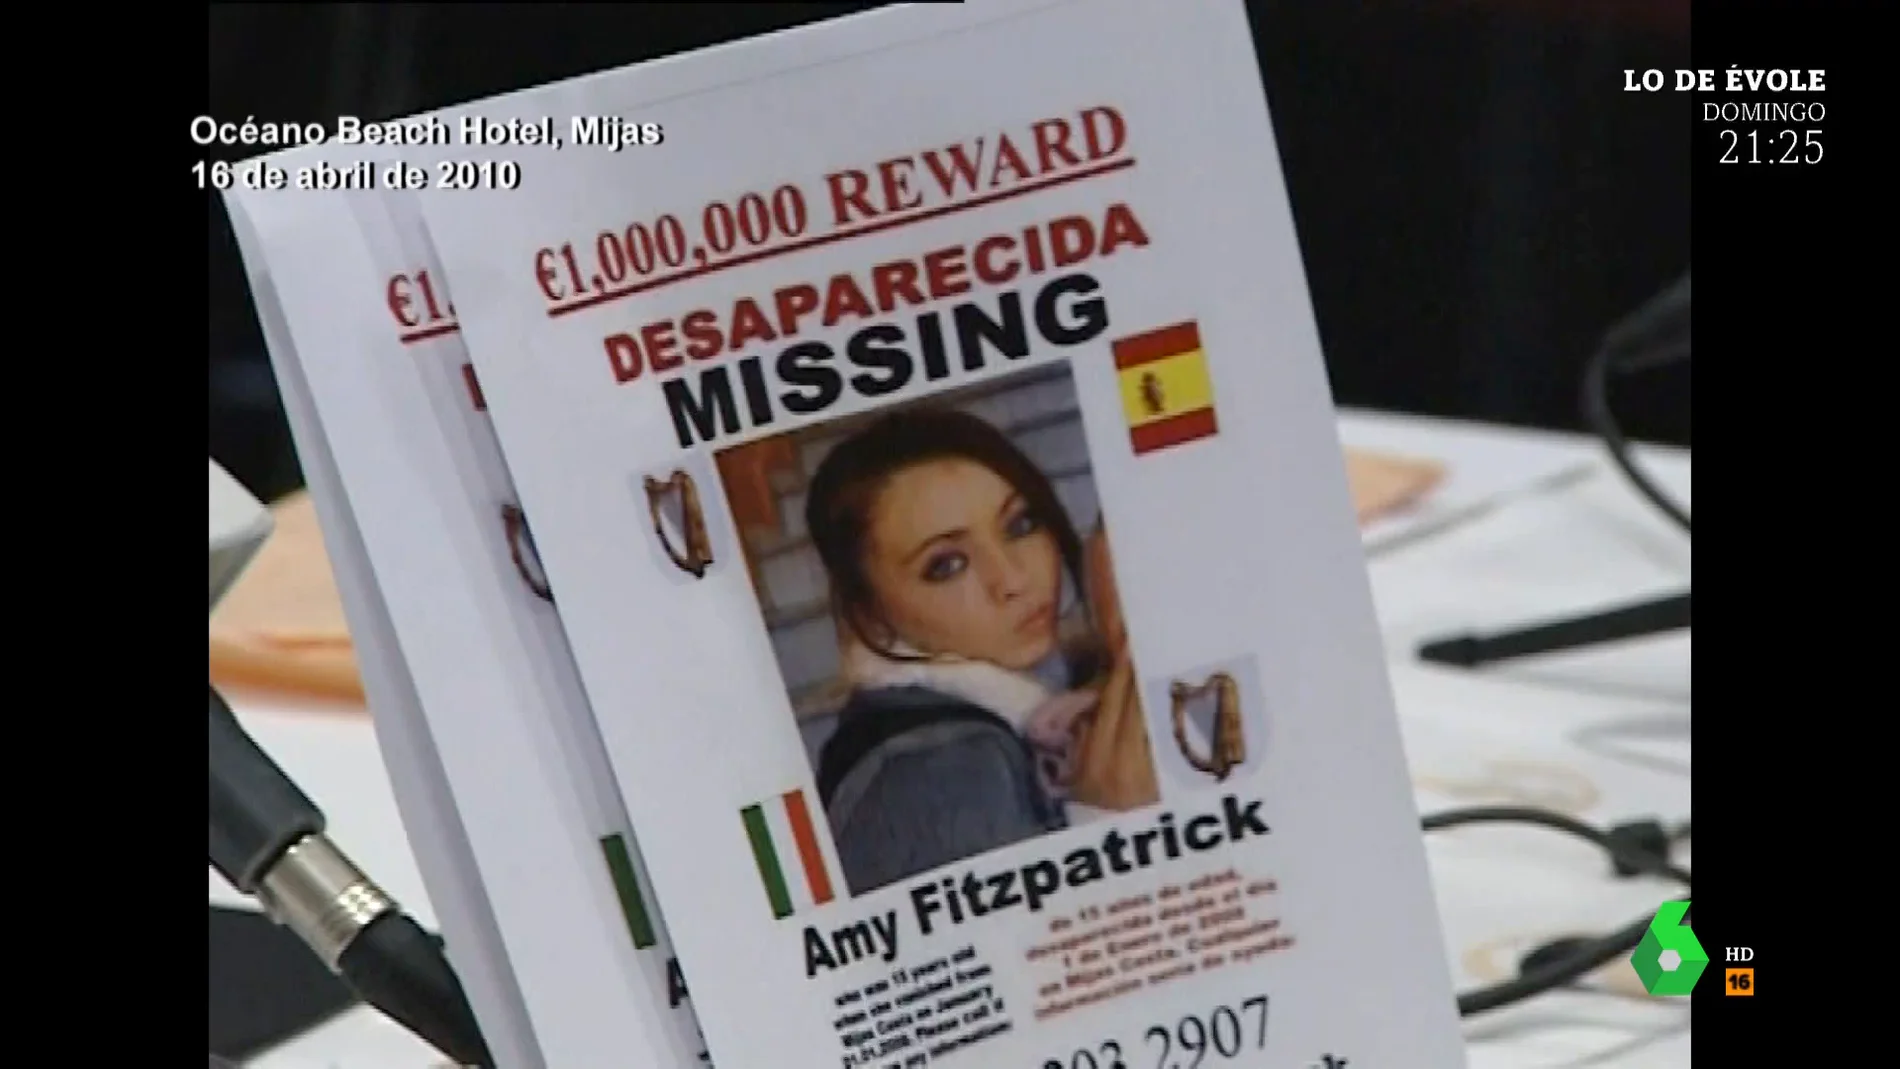 El padrastro y la madre de la desaparecida Amy Fitzpatrick "siempre estaban bebiendo y discutiendo"